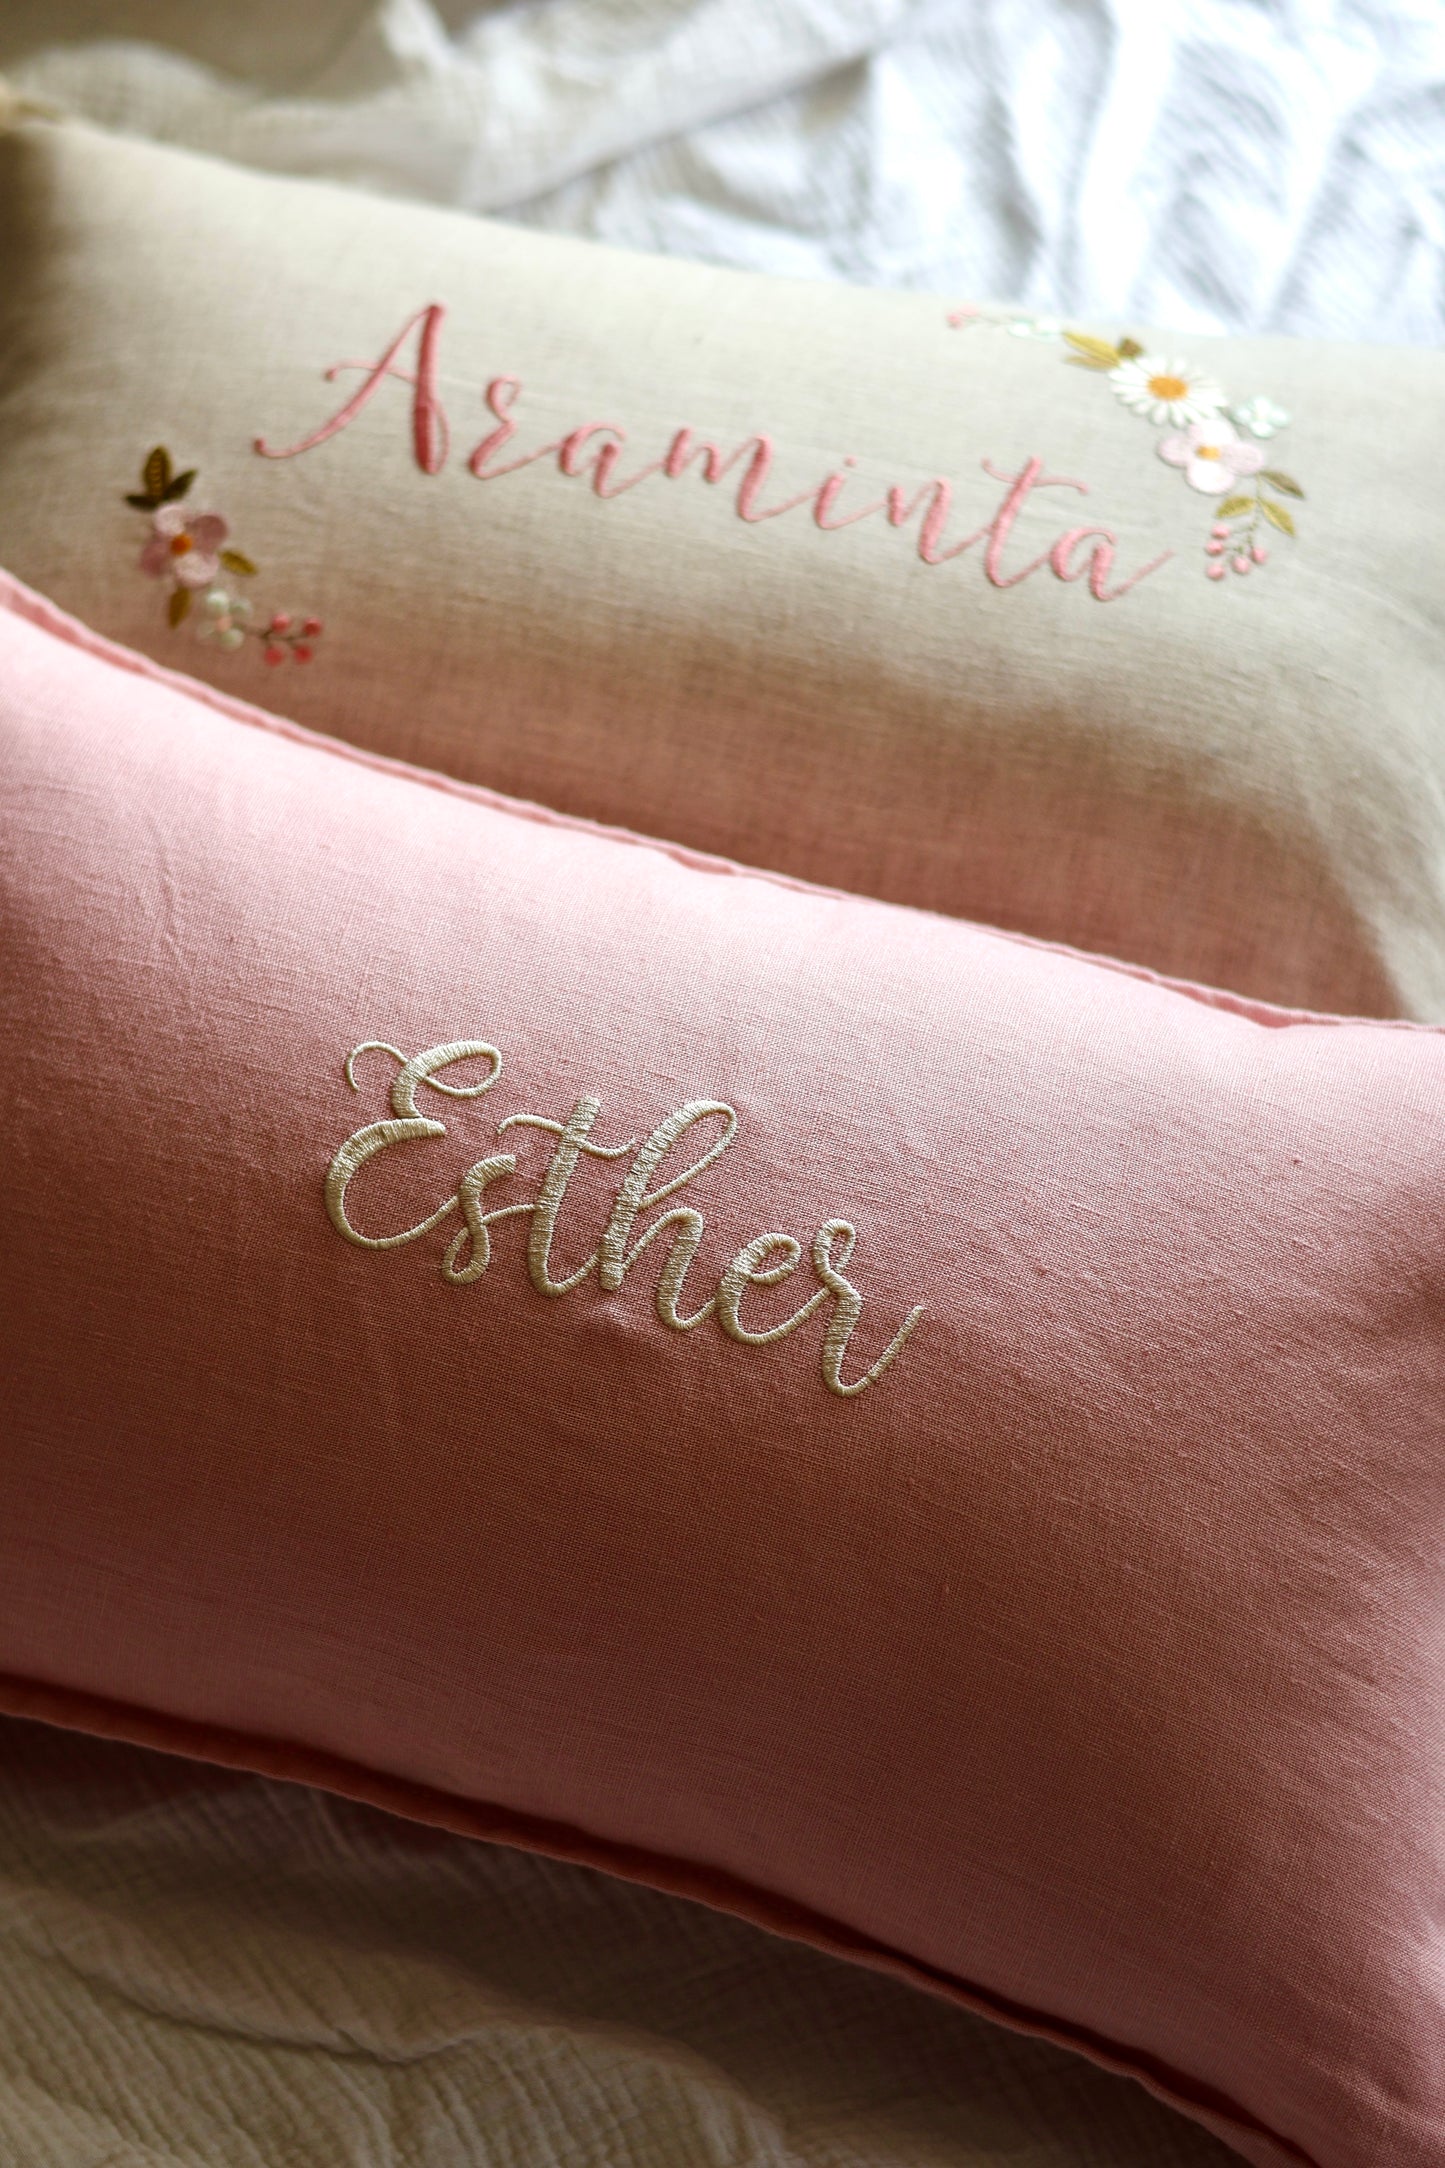 Pure Linen Cushion Cover - Blush